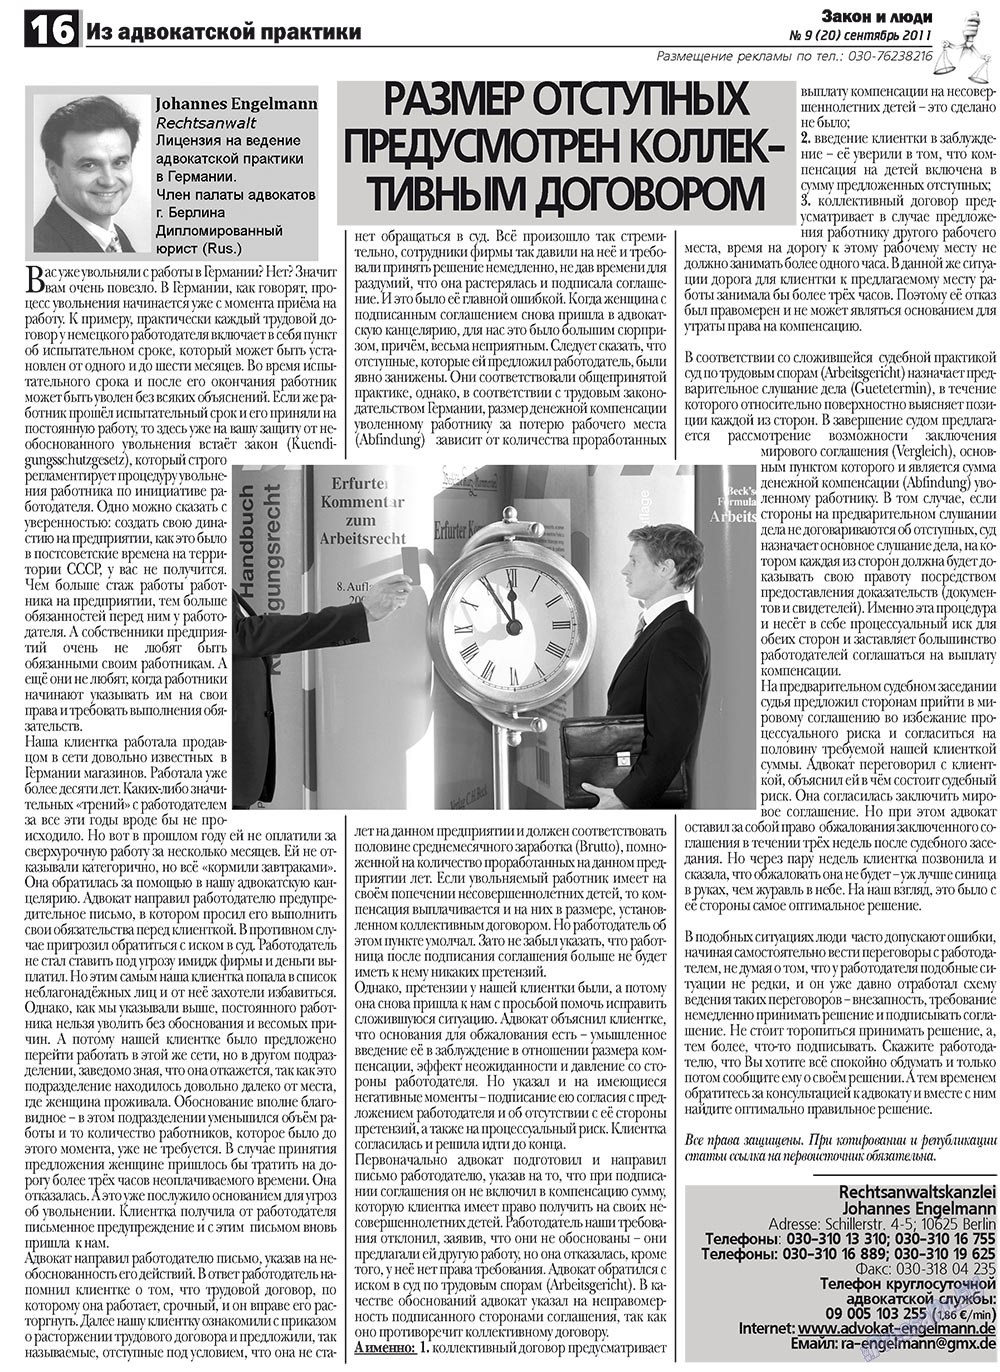 Закон и люди, газета. 2011 №9 стр.16